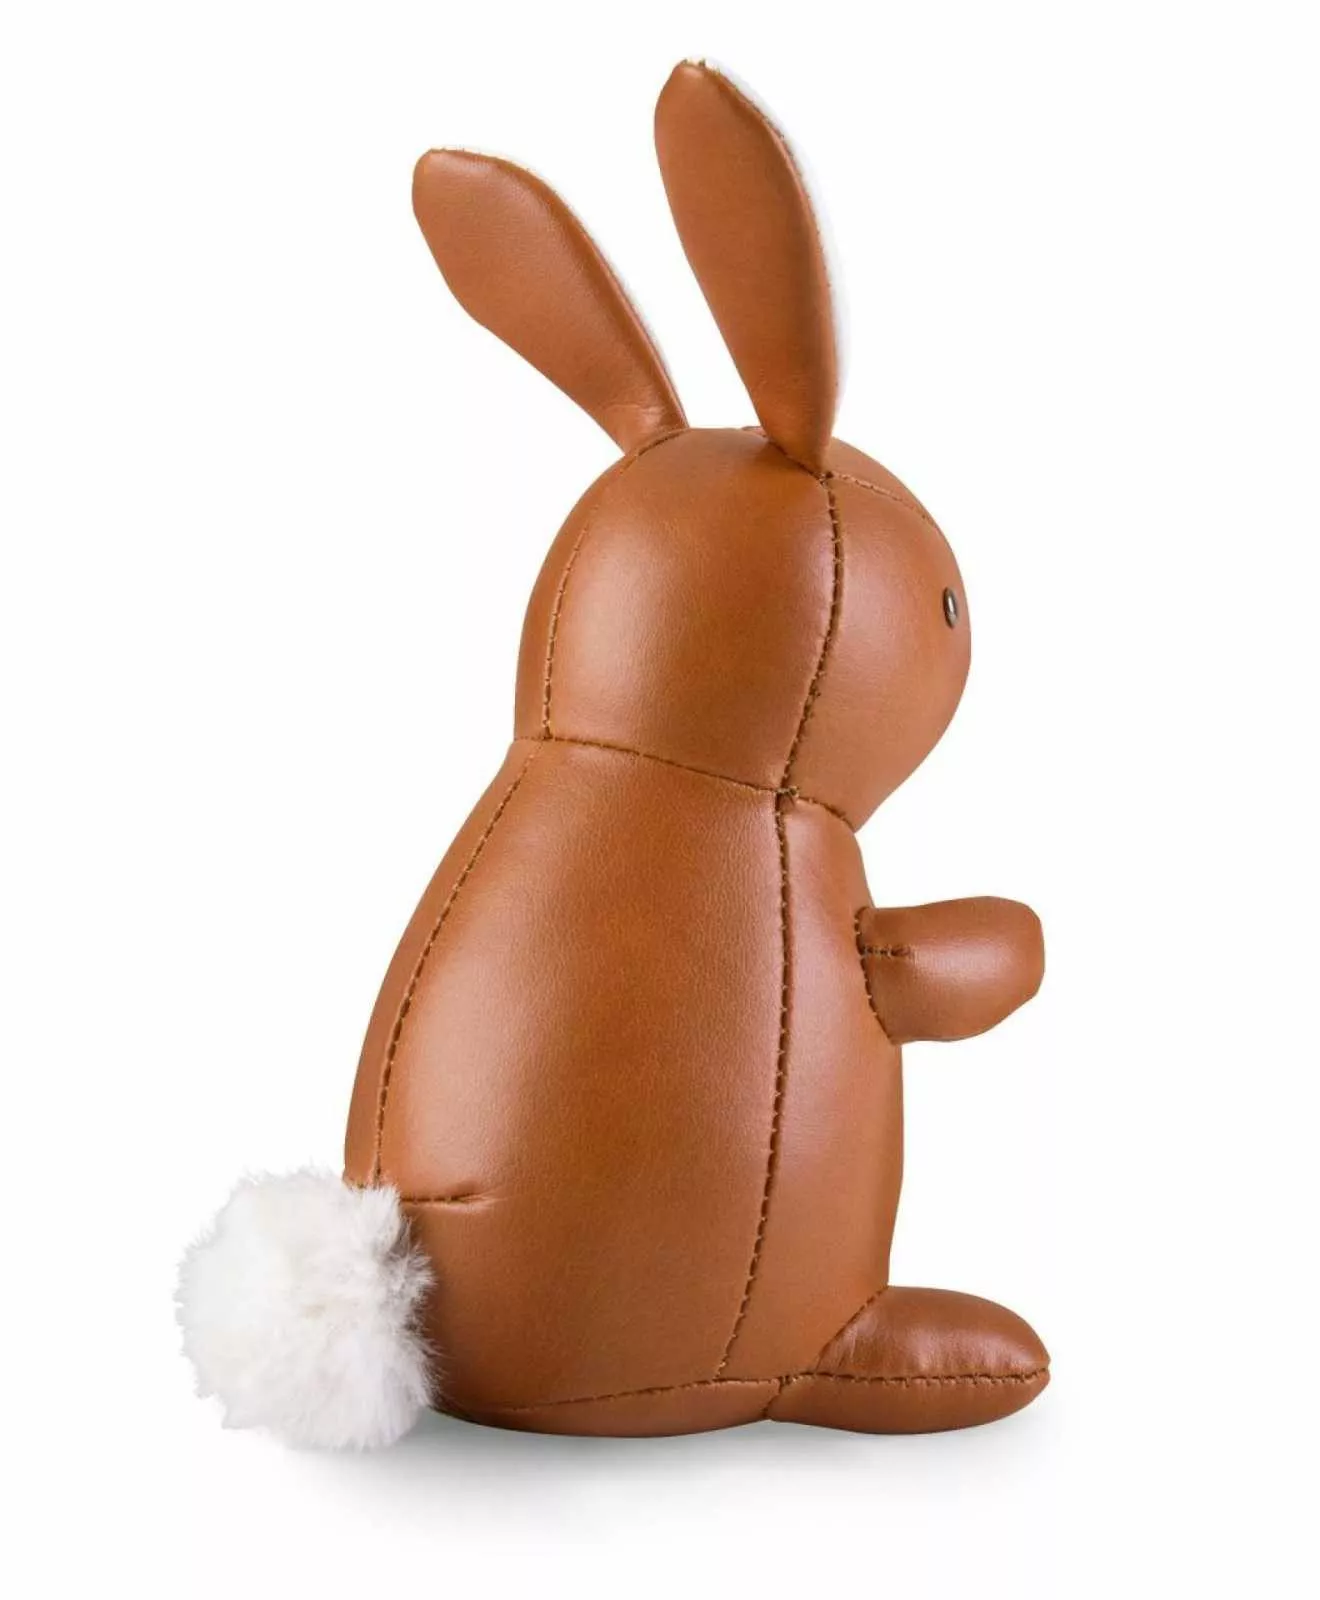 Букенд Rabbit tan-white 1 kg Zuny (ZCBV0120-1001) - Фото nav 4